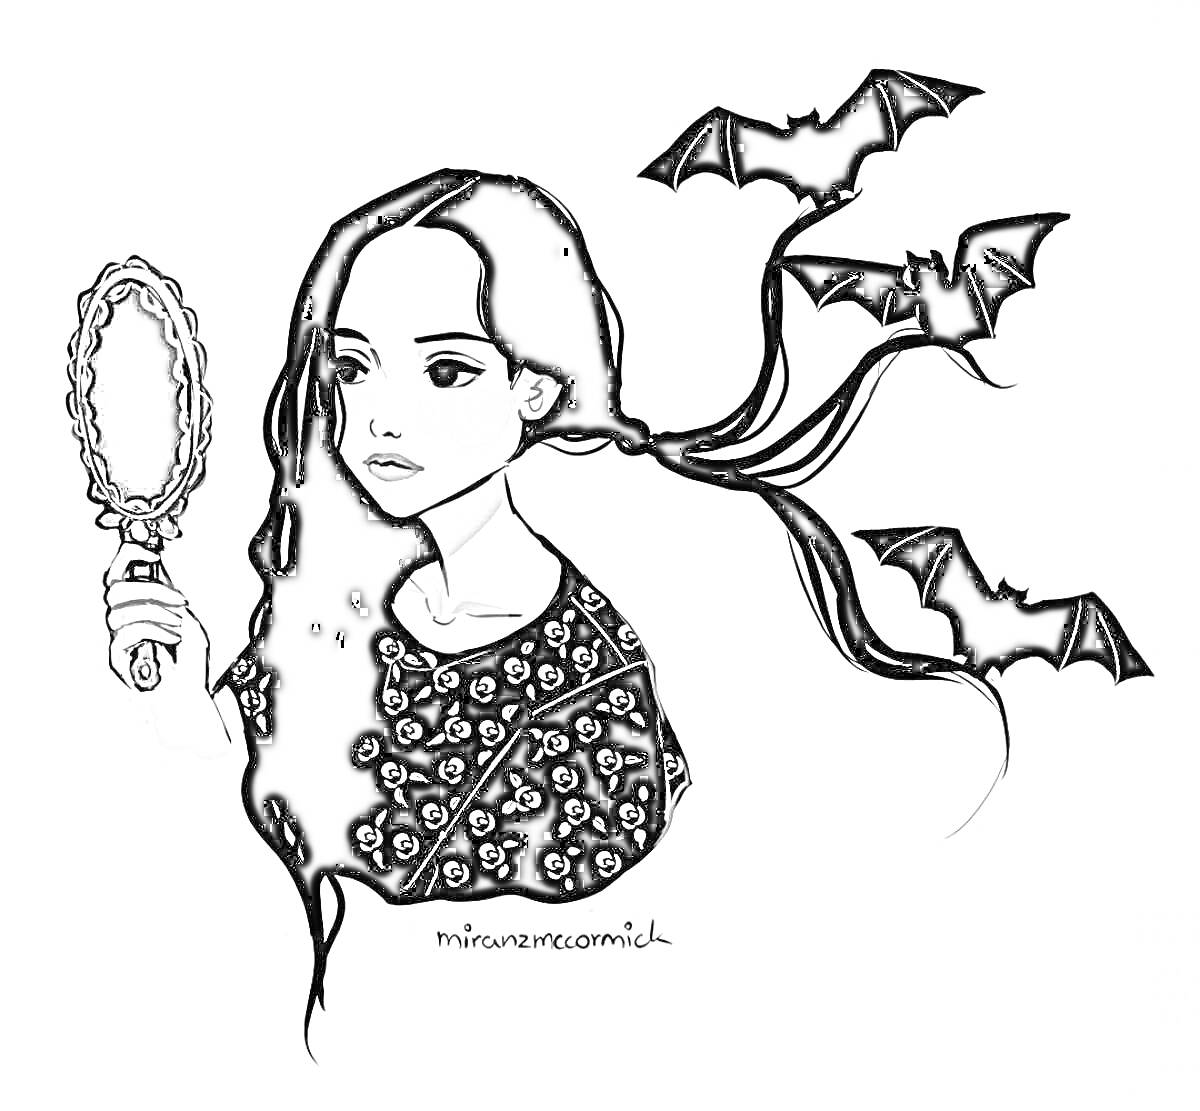 Девушка с длинными черными волосами, держит зеркало, черные летучие мыши, черный наряд с узором черепов